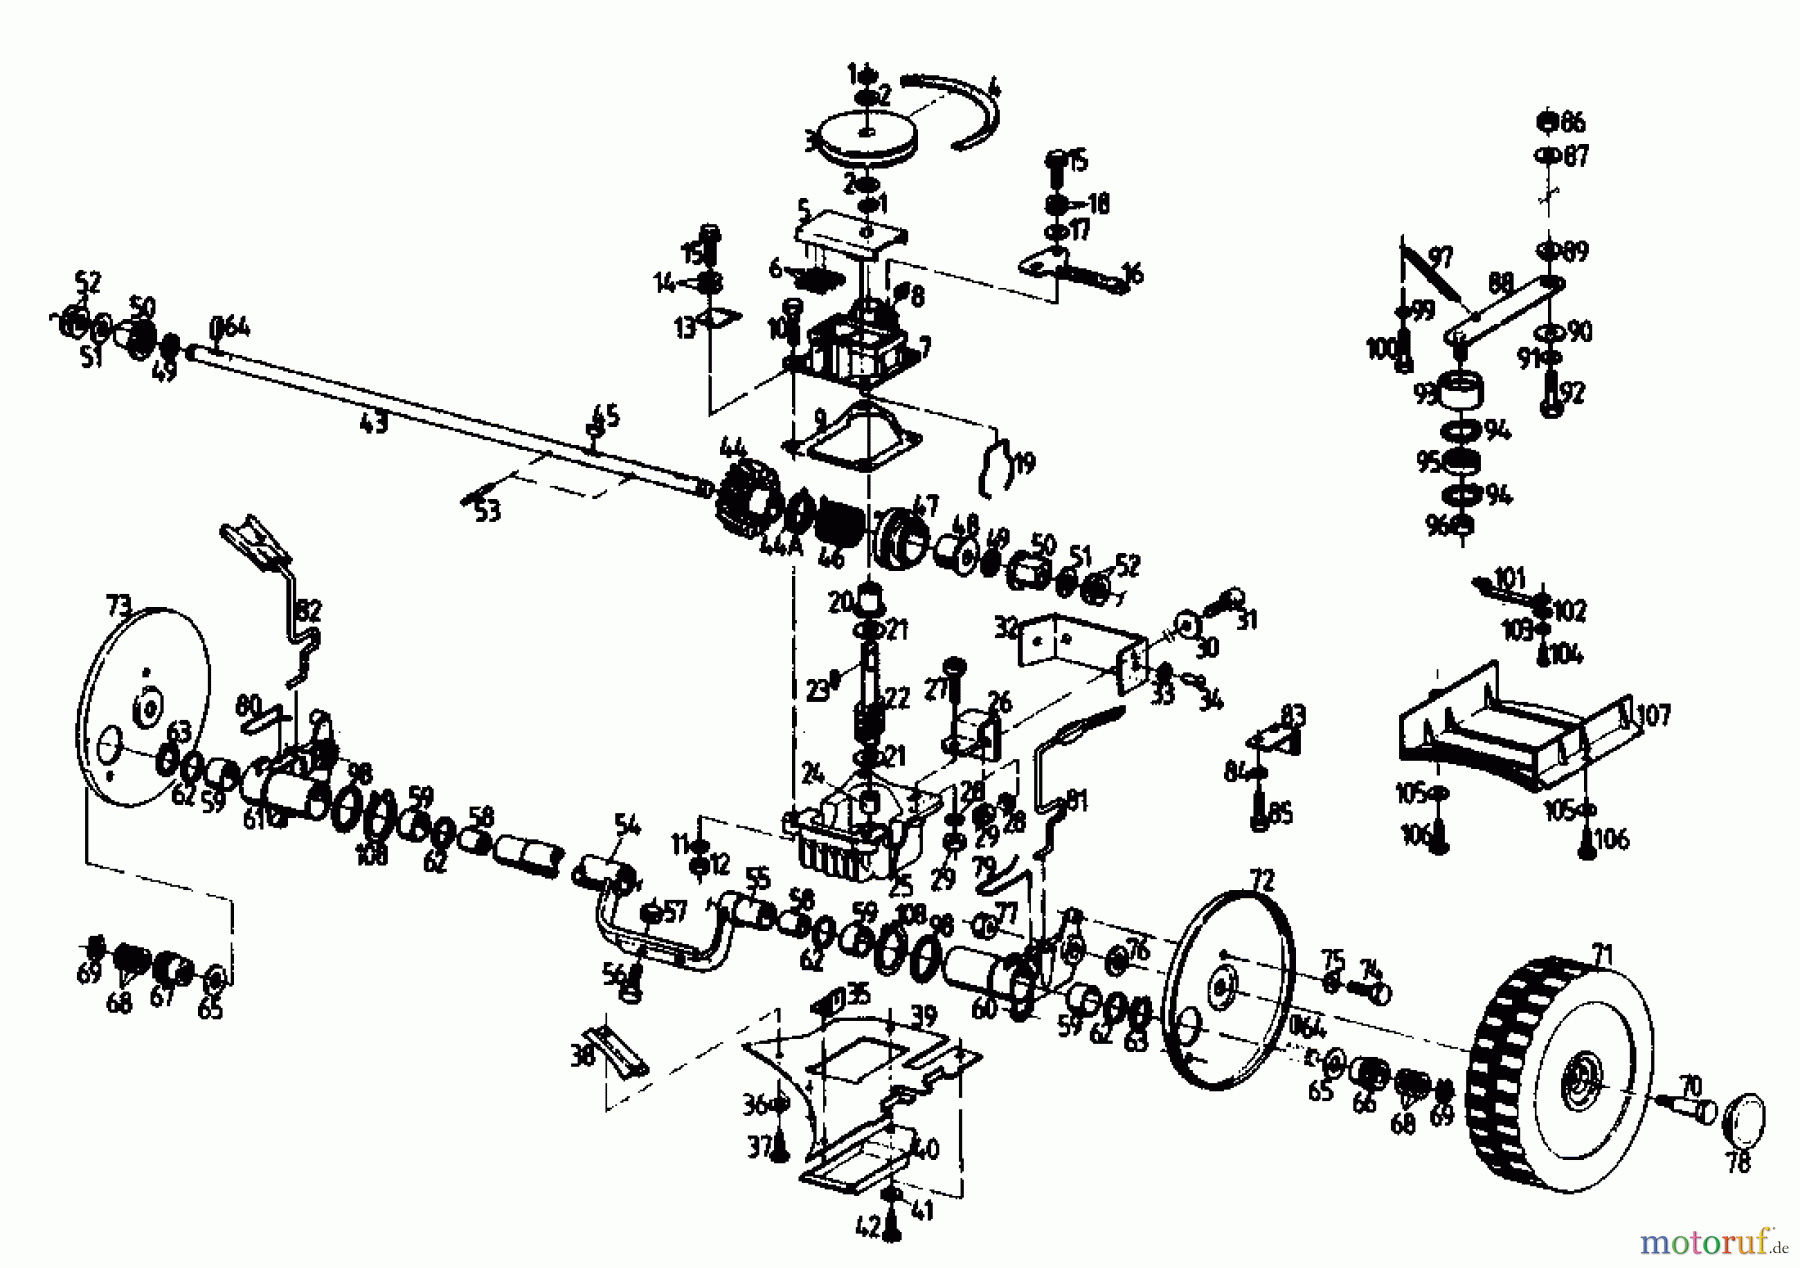  Gutbrod Motormäher mit Antrieb HB 47 R 02847.01  (1989) Getriebe